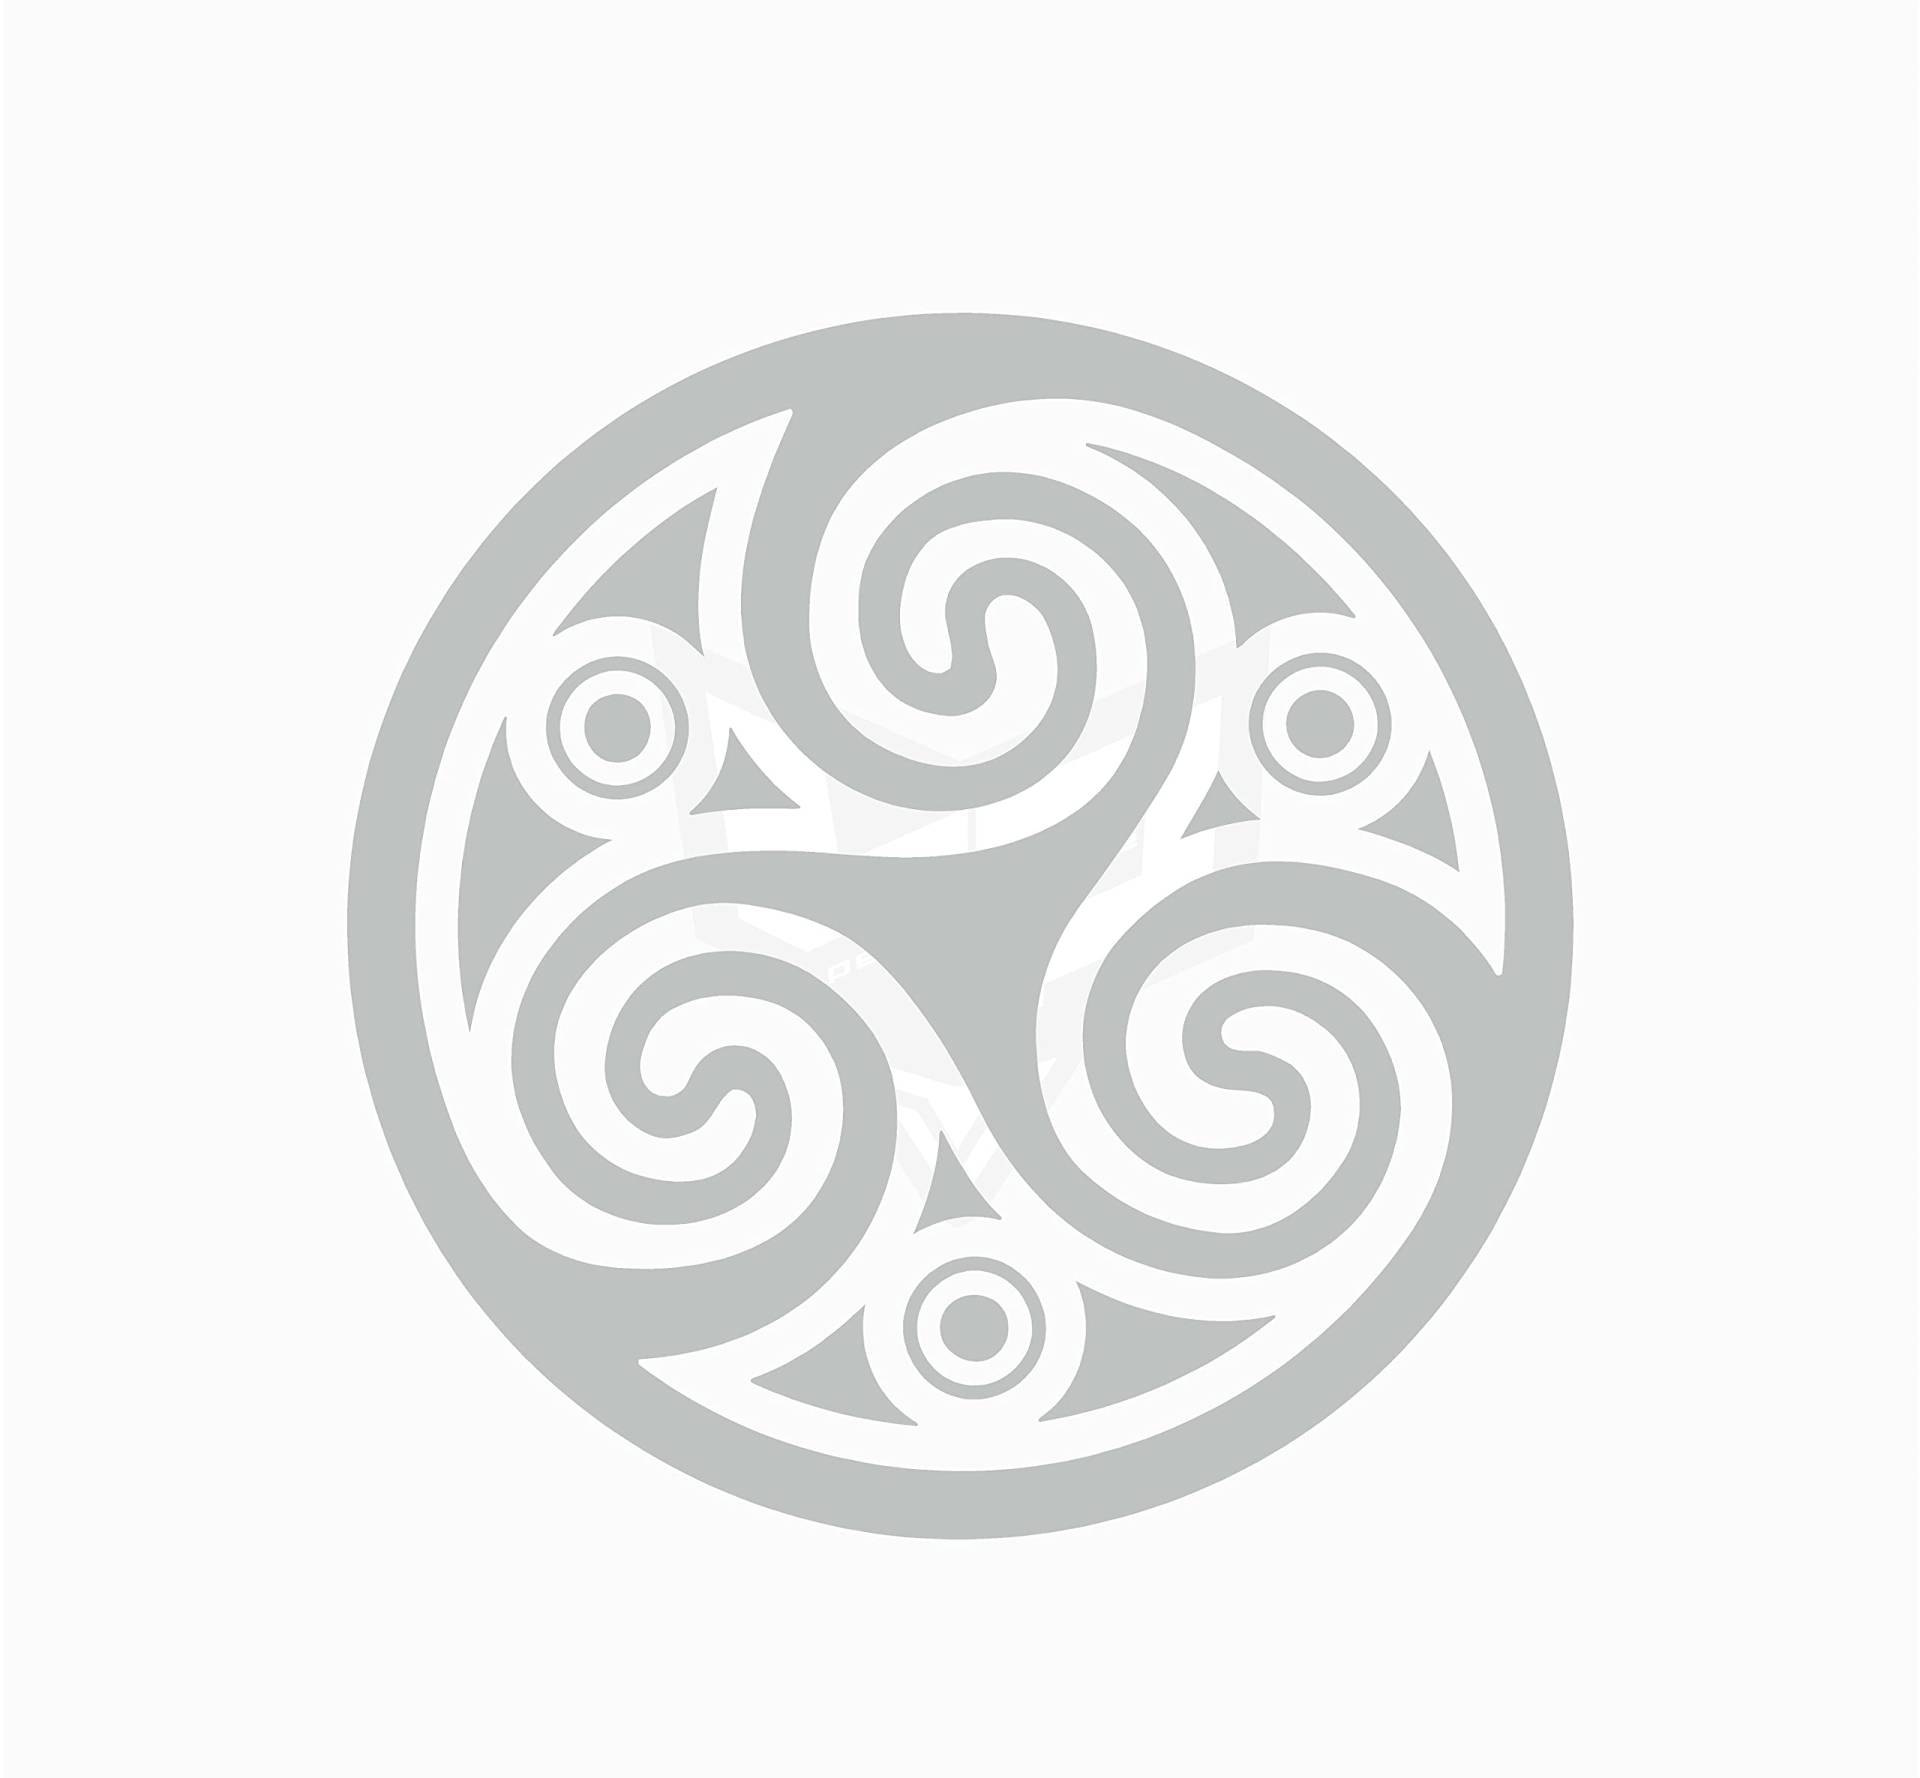 Artstickers Aufkleber Trisquel Celta Mod.3, Symbol Kelta, verschiedene Größen und Farben zur Auswahl, Silber, 14 x 14 cm von Artstickers